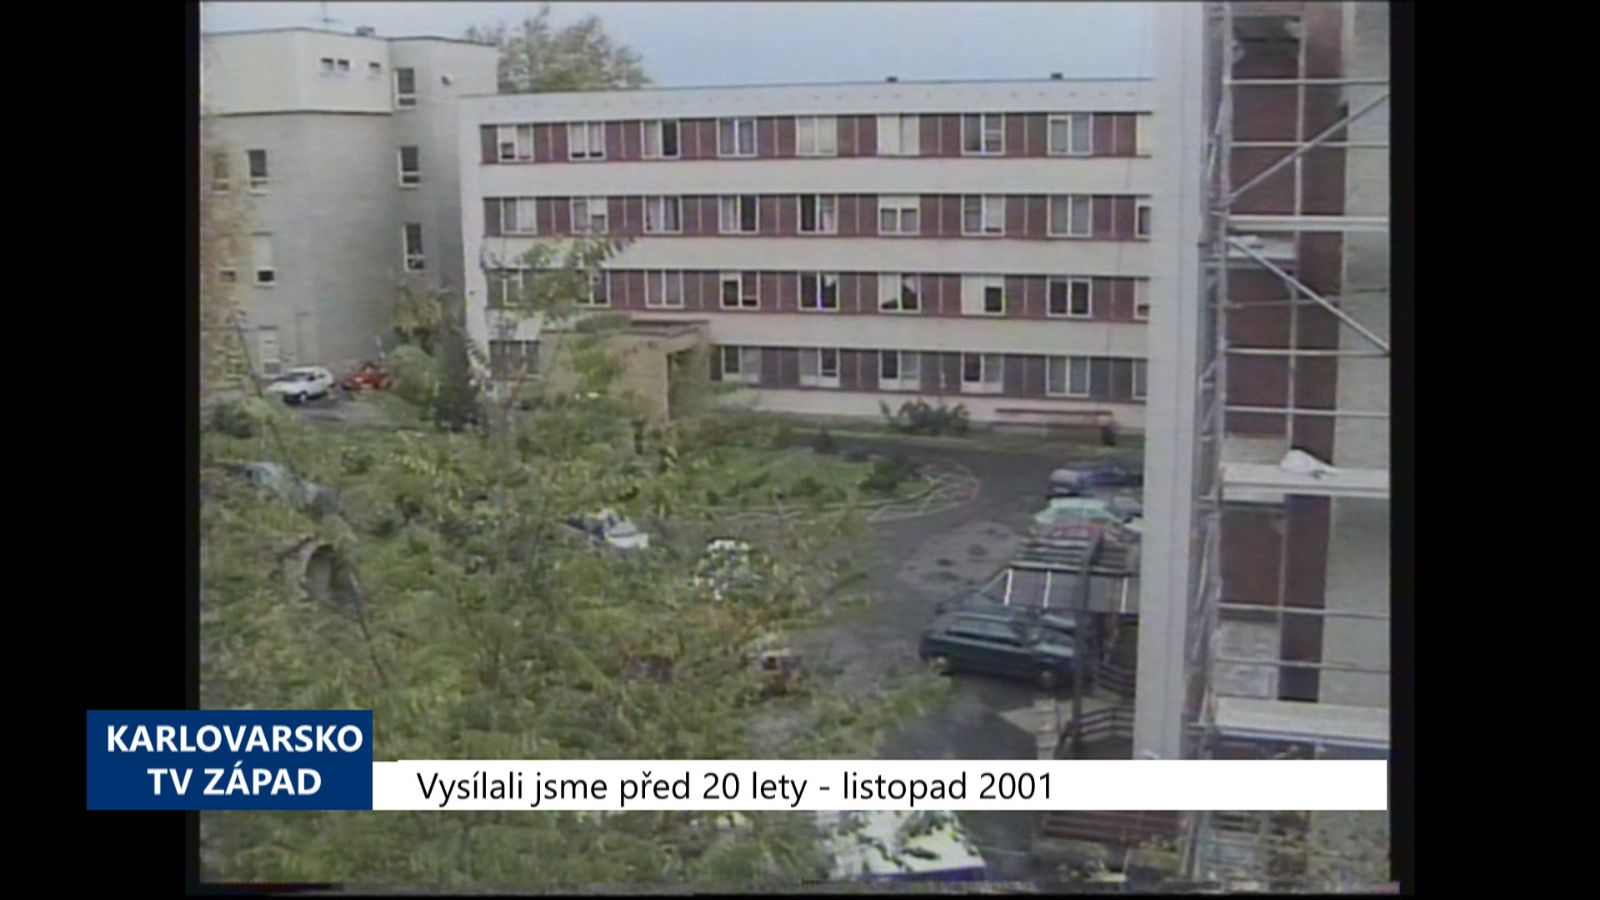 2001 – Sokolov: Nemocnice chce příspěvek, město její pozemky (TV Západ)